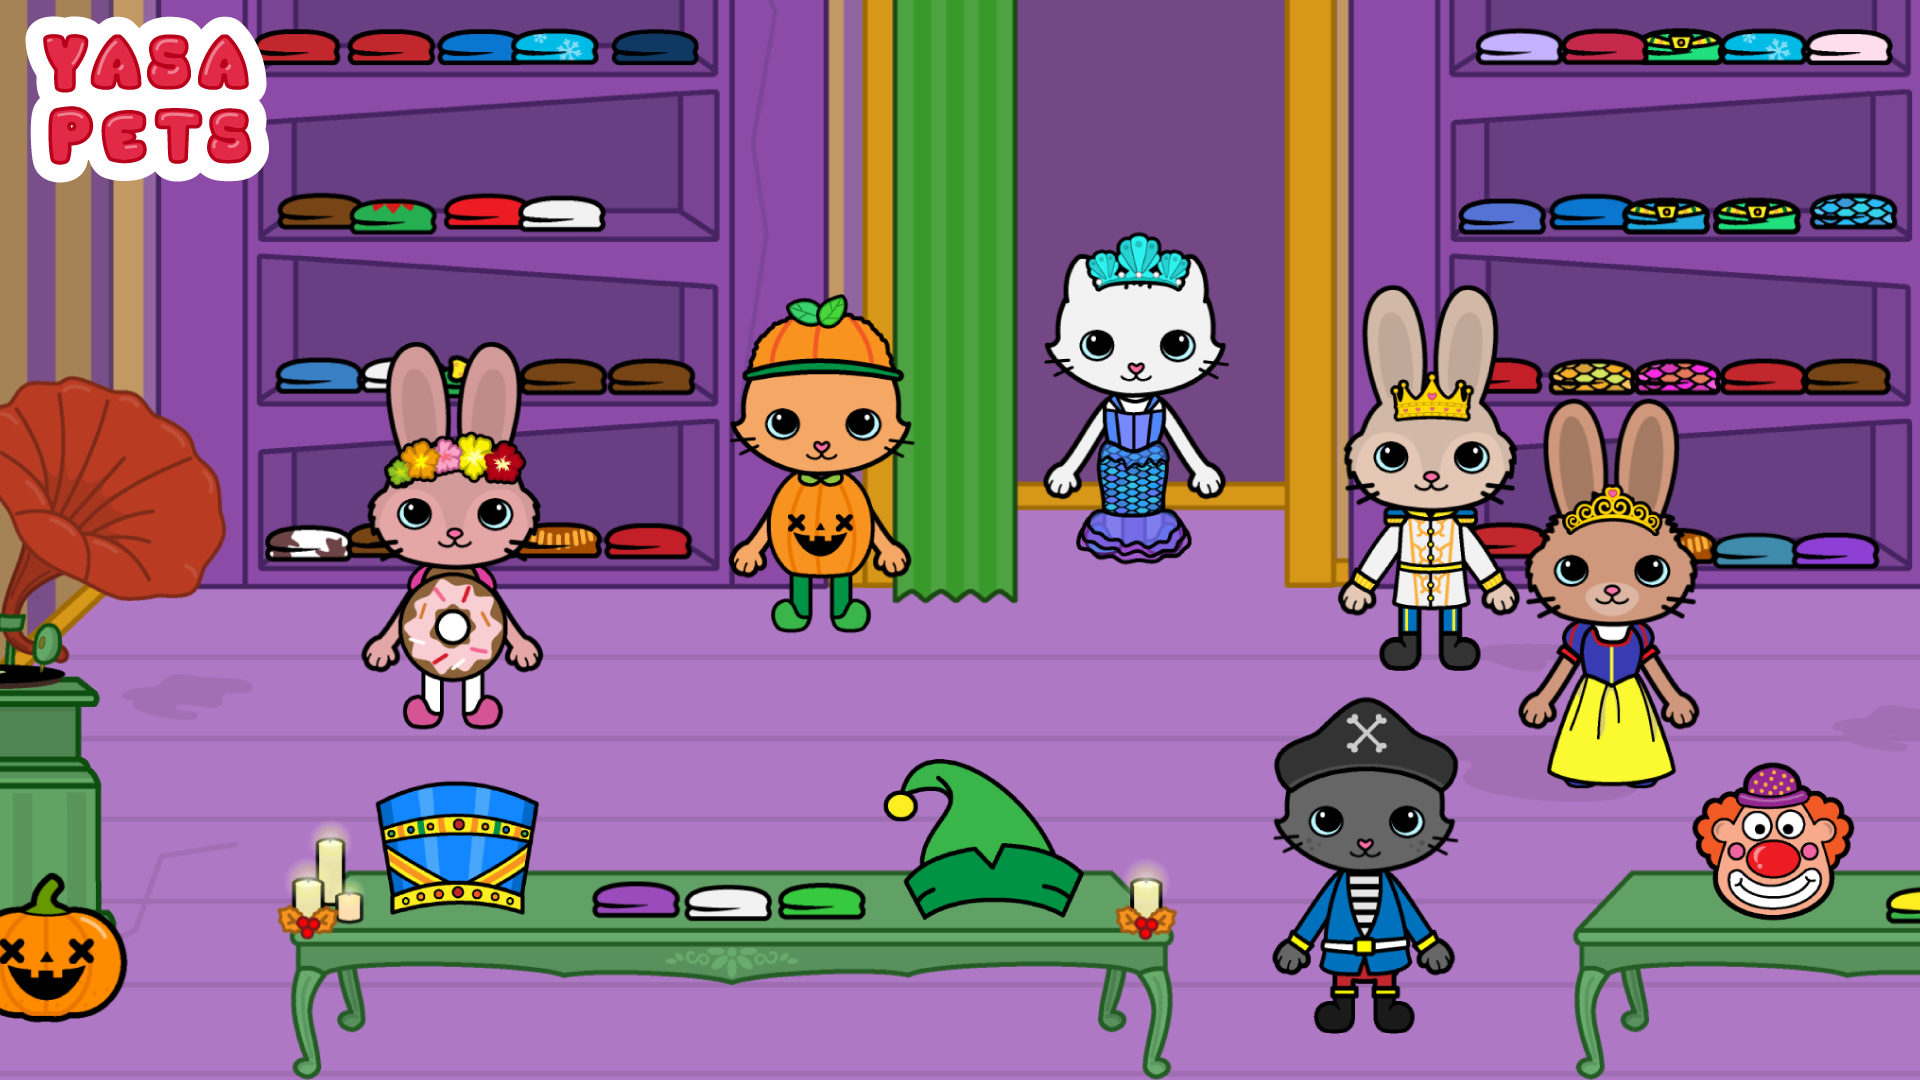 Yasa Pets Halloween 게임 스크린 샷